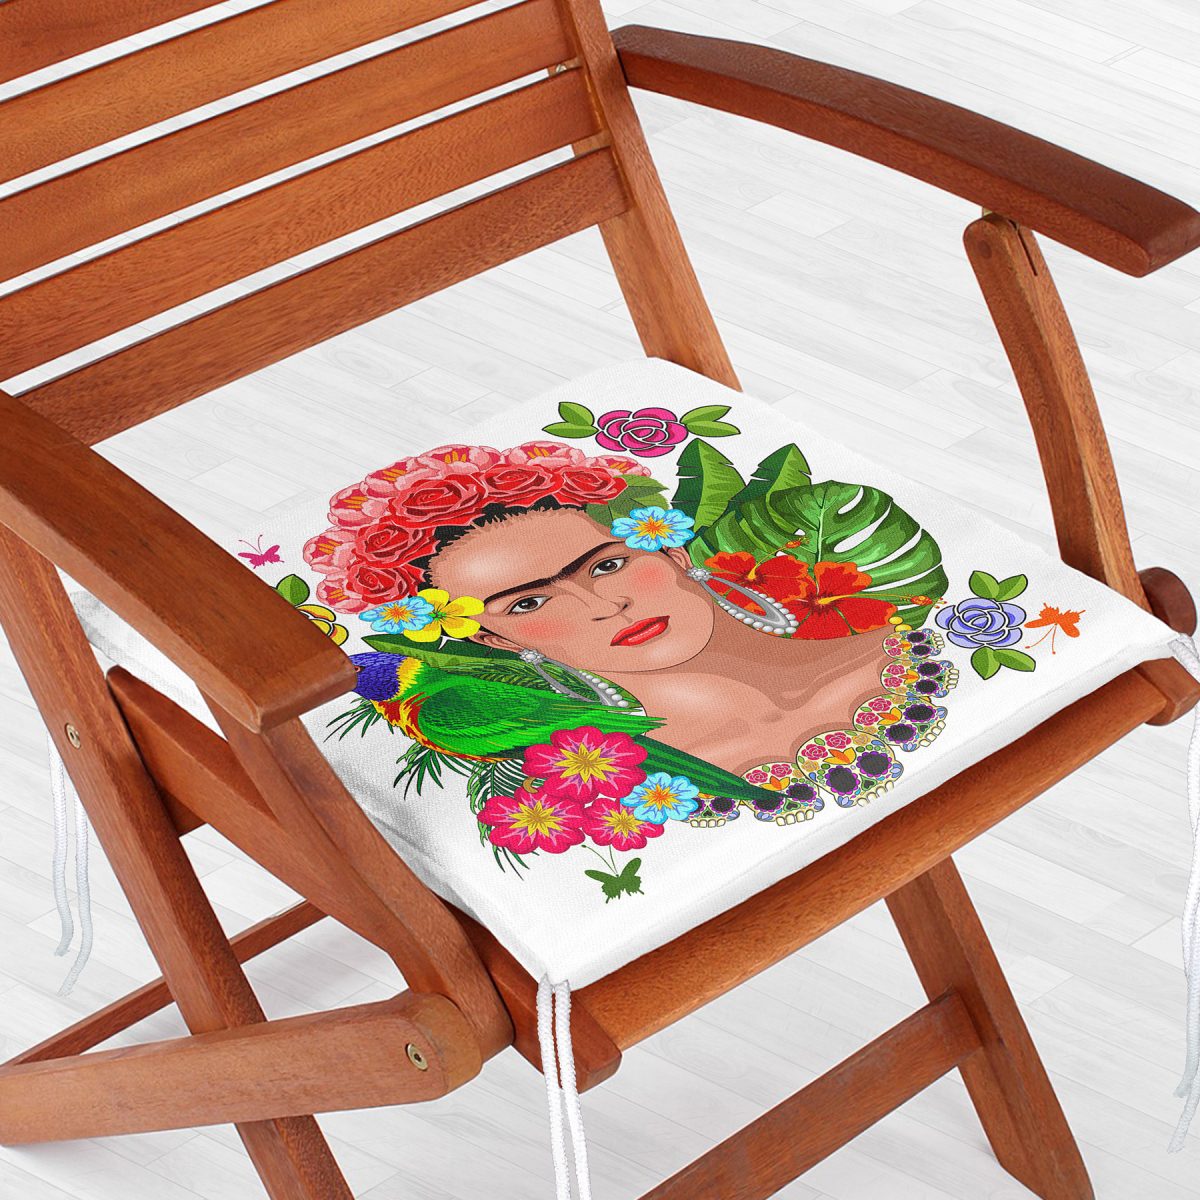 Özel Tasarım Frida Kahlo Tasarımlı Dekoratif Fermuarlı Sandalye Minderi Realhomes